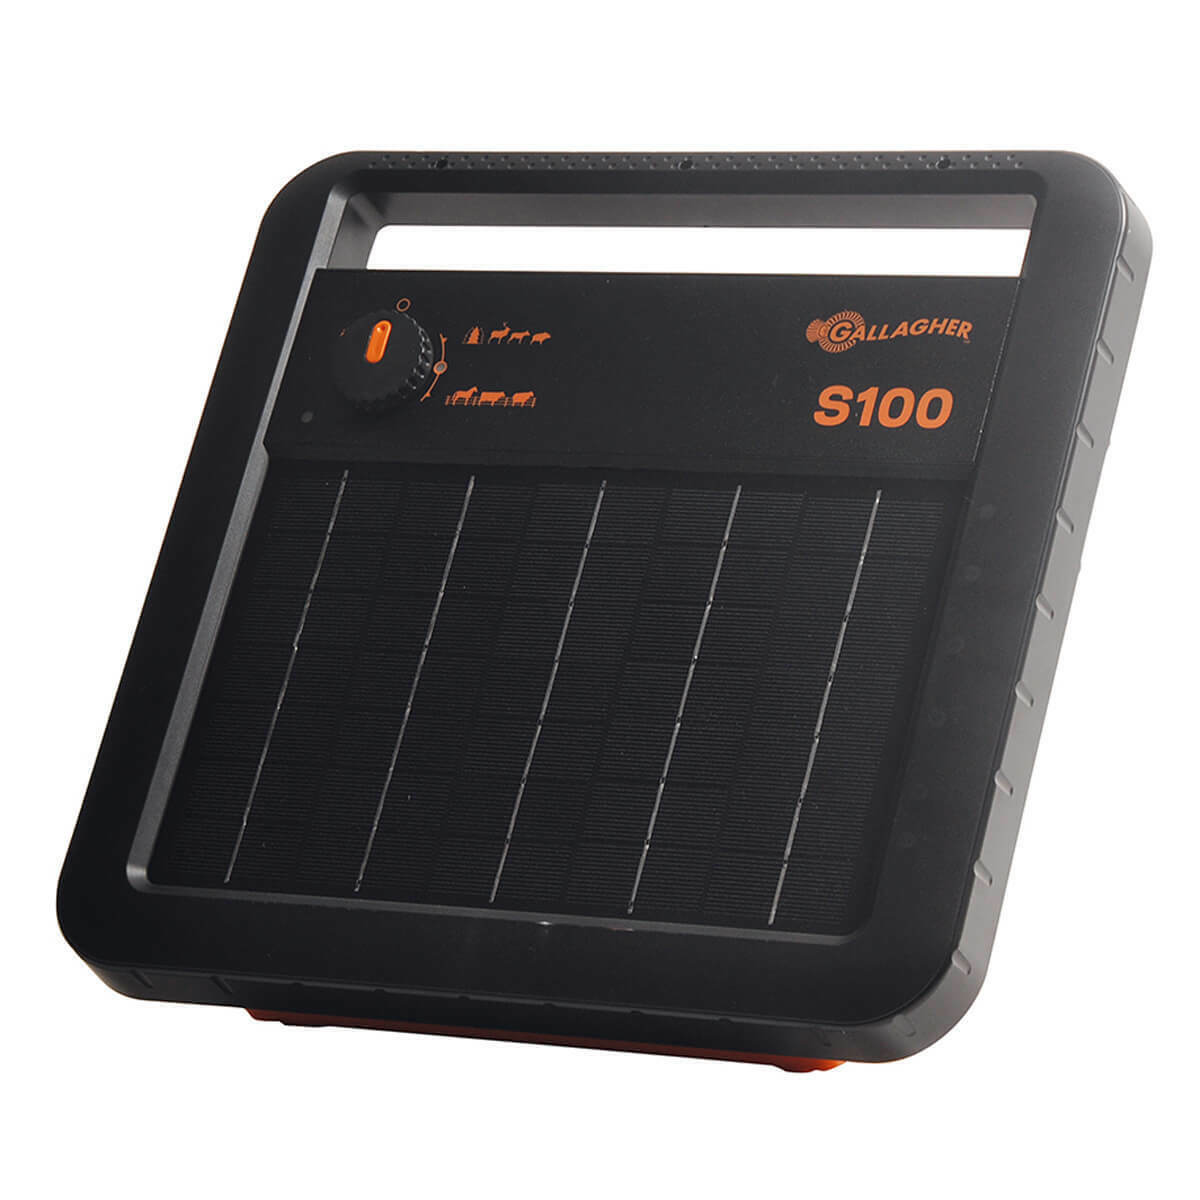 Gallagher S100 Solar Energiser Battery 12V 7.2Ah